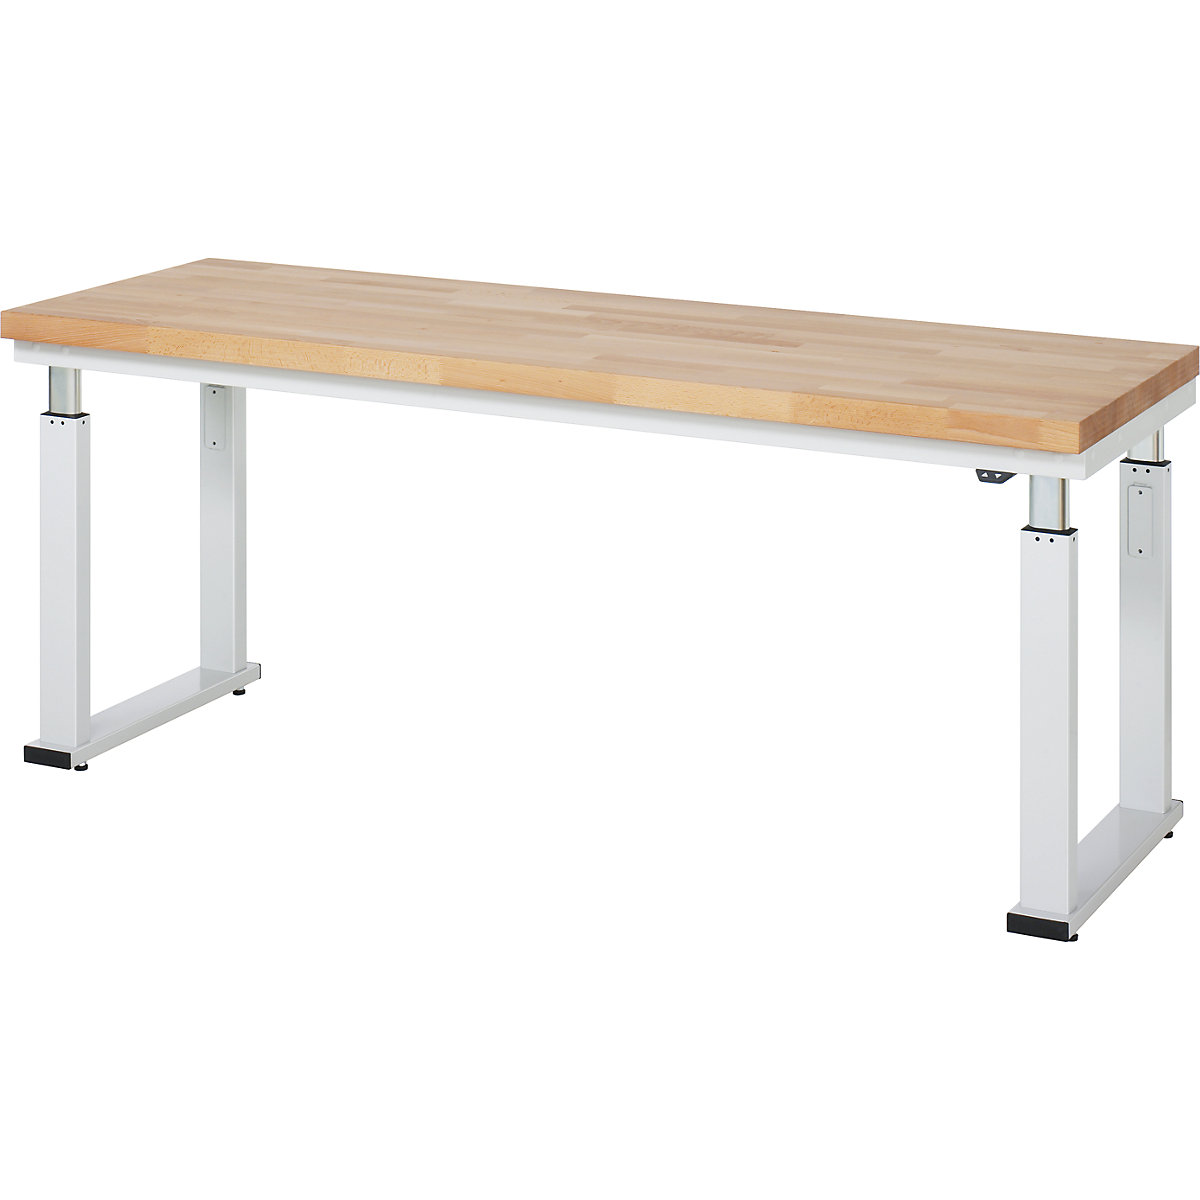 Psací stůl s elektrickým přestavováním výšky – RAU, bukový masiv, nosnost 600 kg, š x h 2000 x 700 mm-14